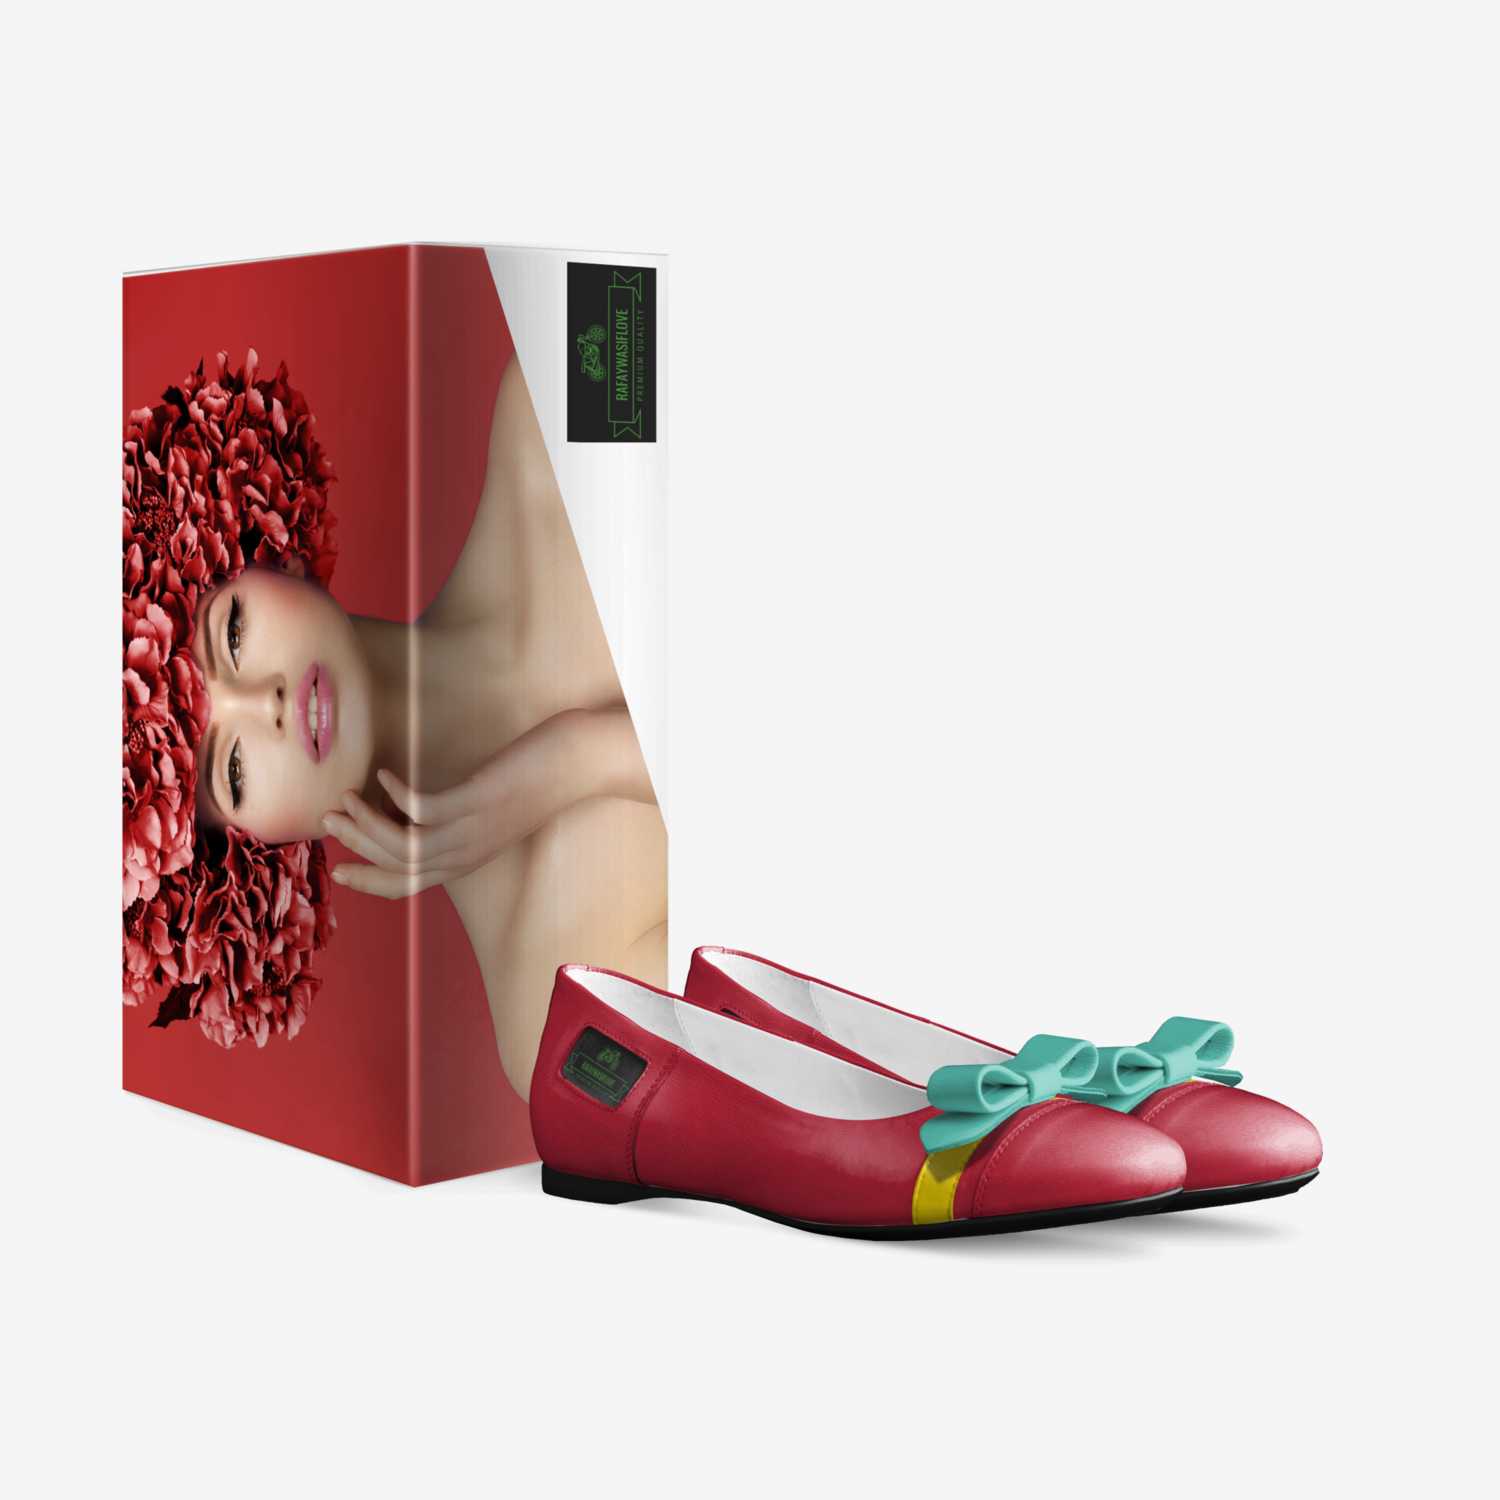 rafaywasiflove custom made in Italy shoes by Abdulrafaywasif | Box view